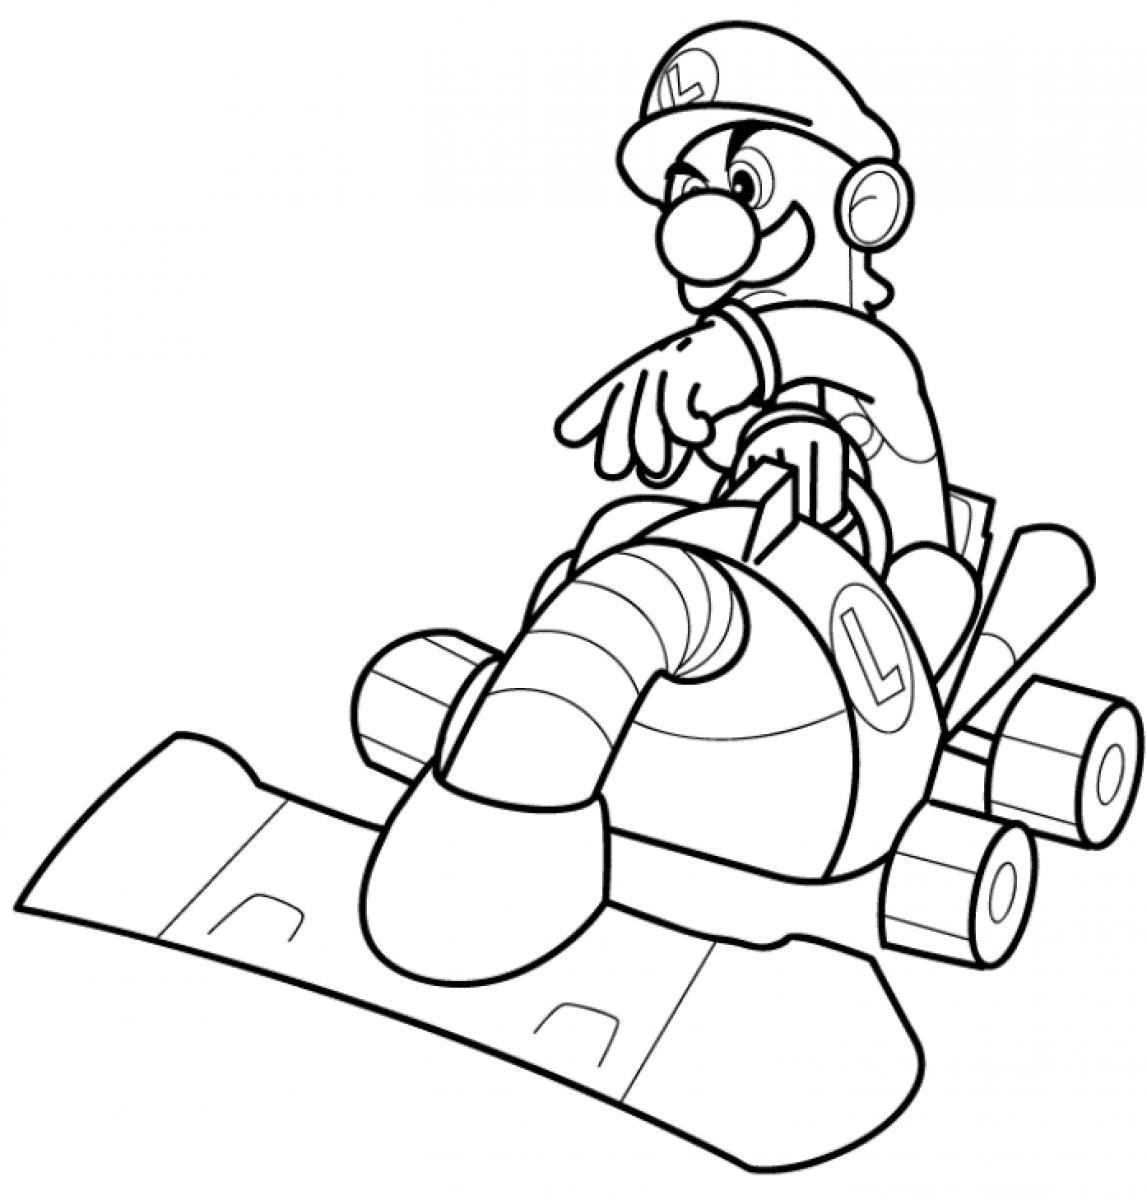 Mario And Luigi Coloring Page